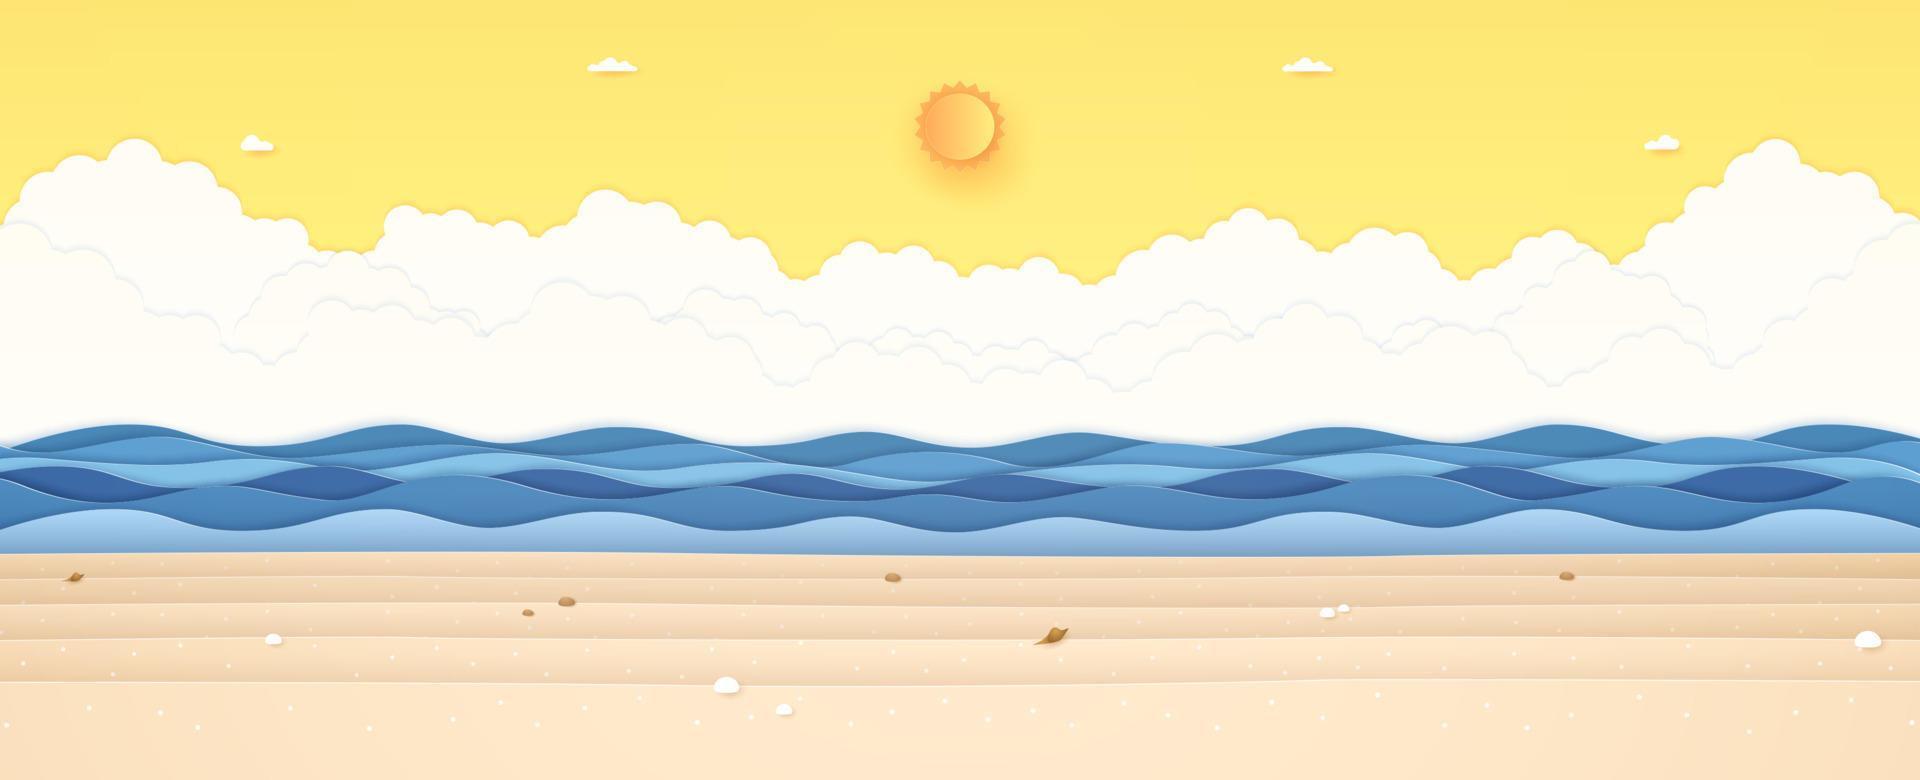 heure d'été, paysage marin, paysage, mer bleue ondulée avec pierre et coquillages sur la plage, soleil éclatant et ciel orange ensoleillé, style art papier vecteur